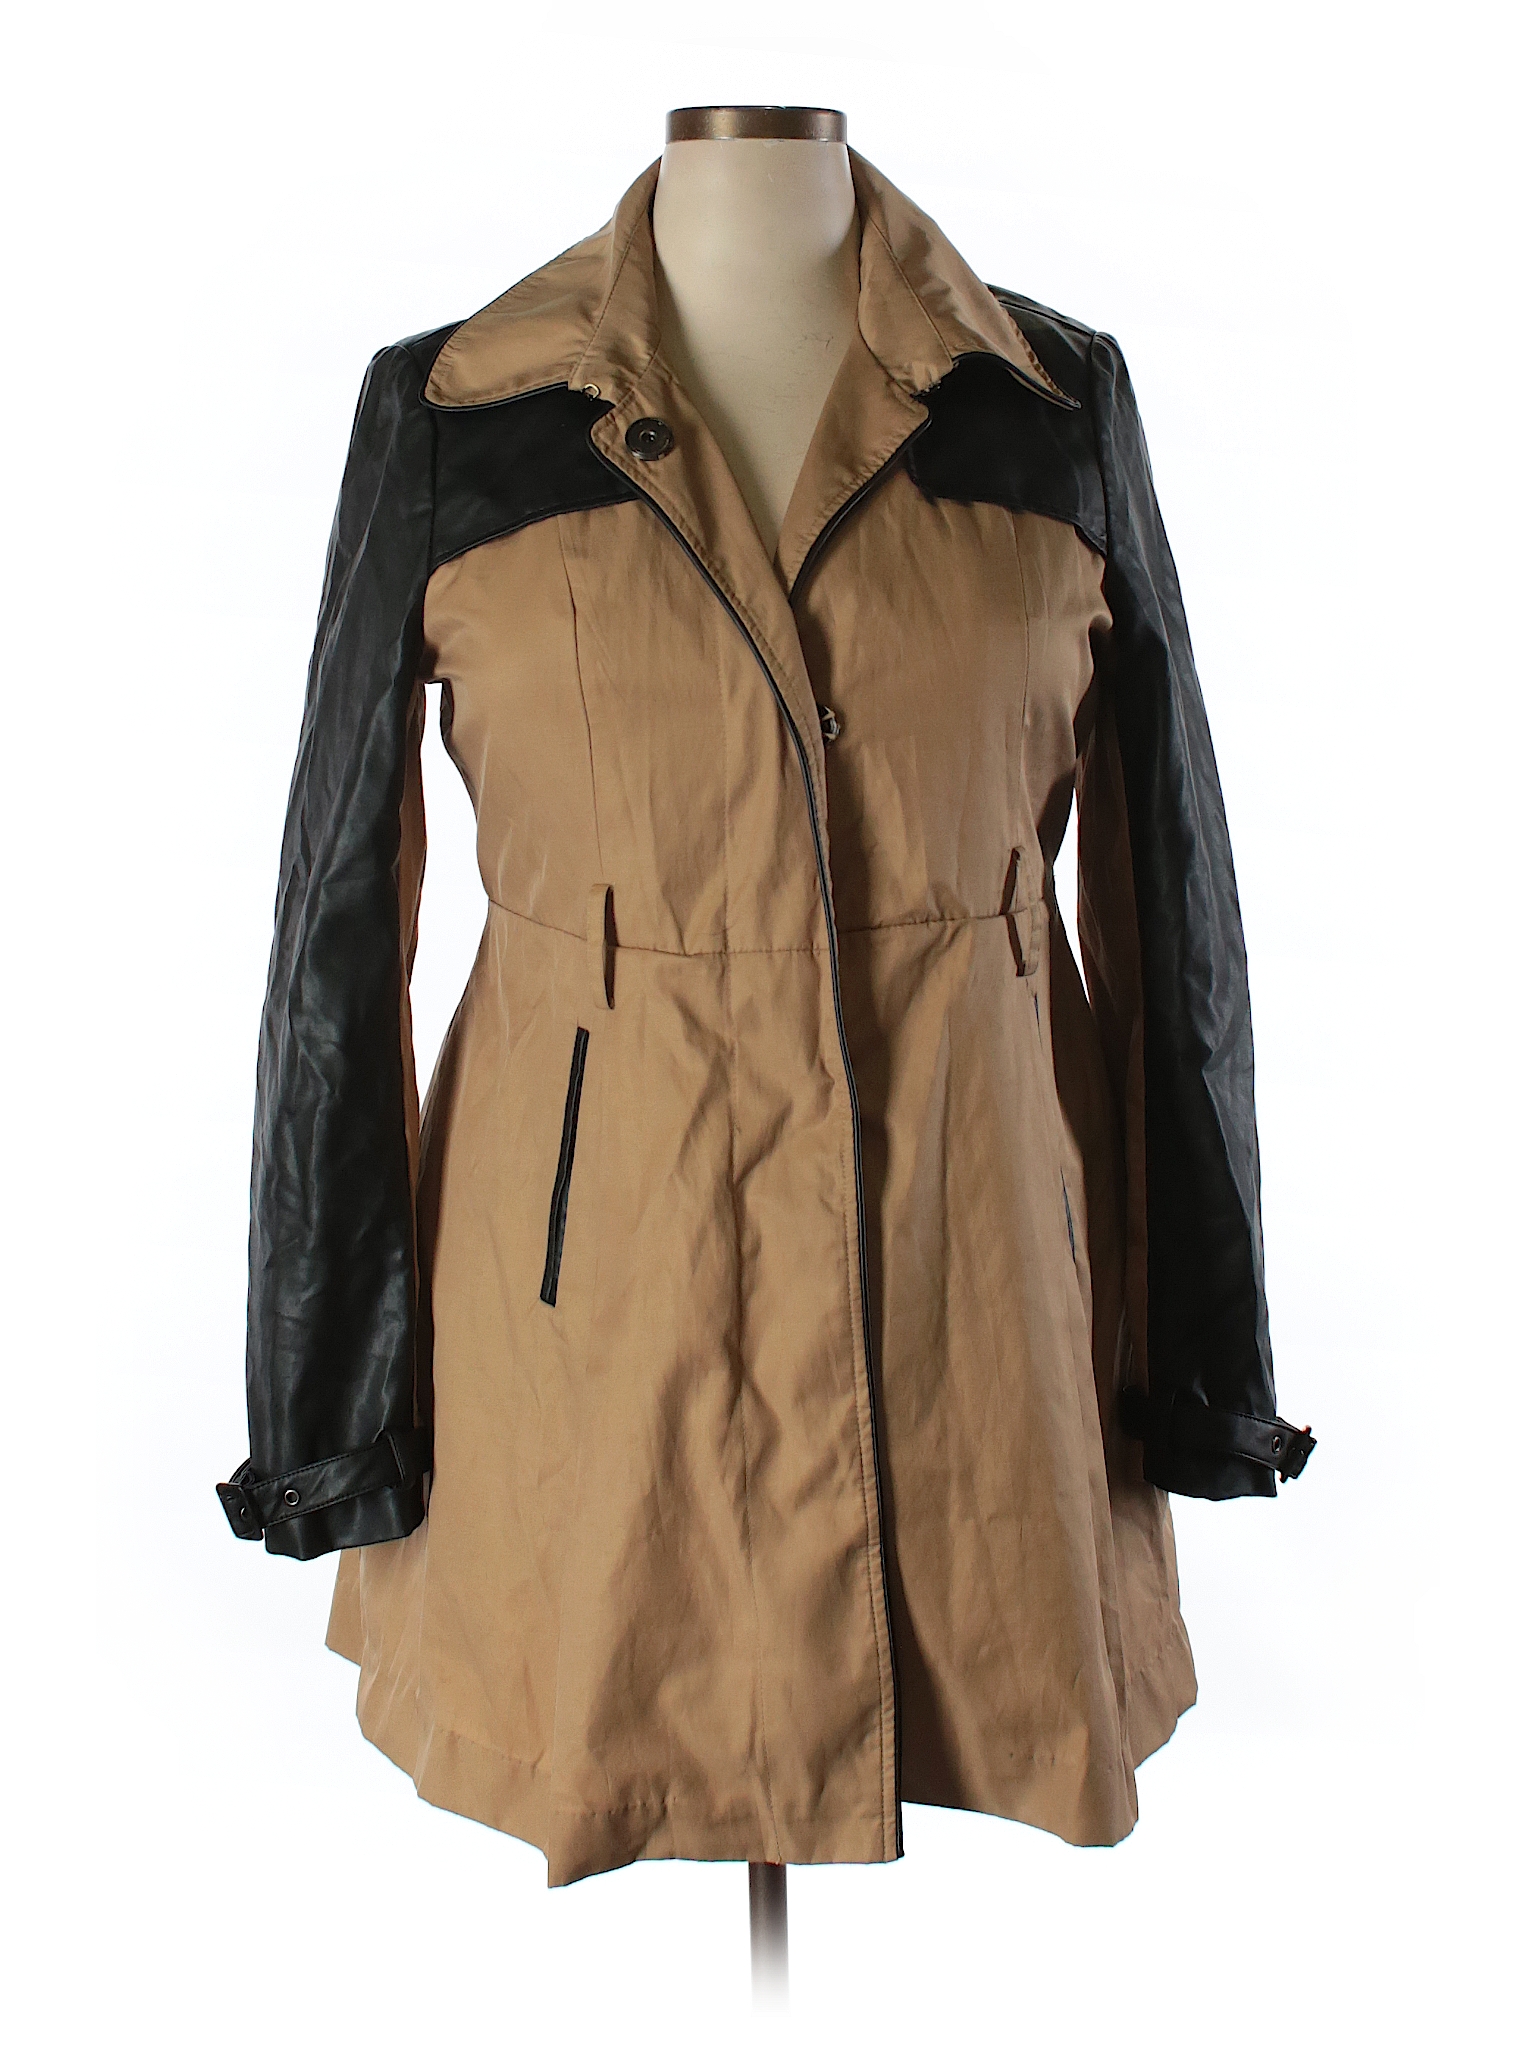 Bebe Color Block Tan Coat Size XL - 69% off | thredUP